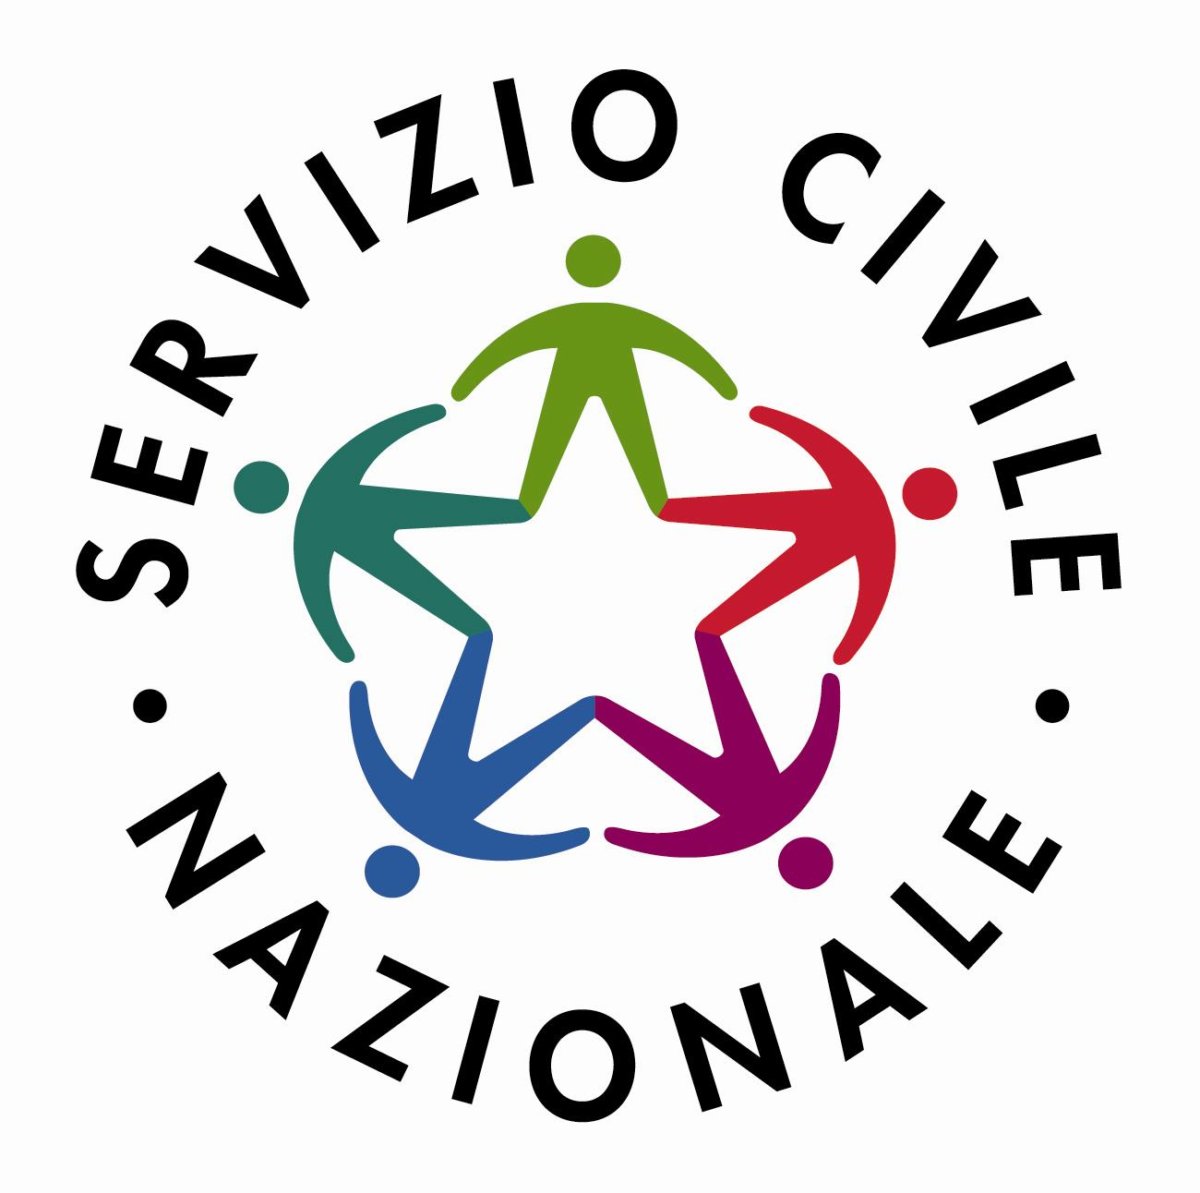 servizio civile nazionale